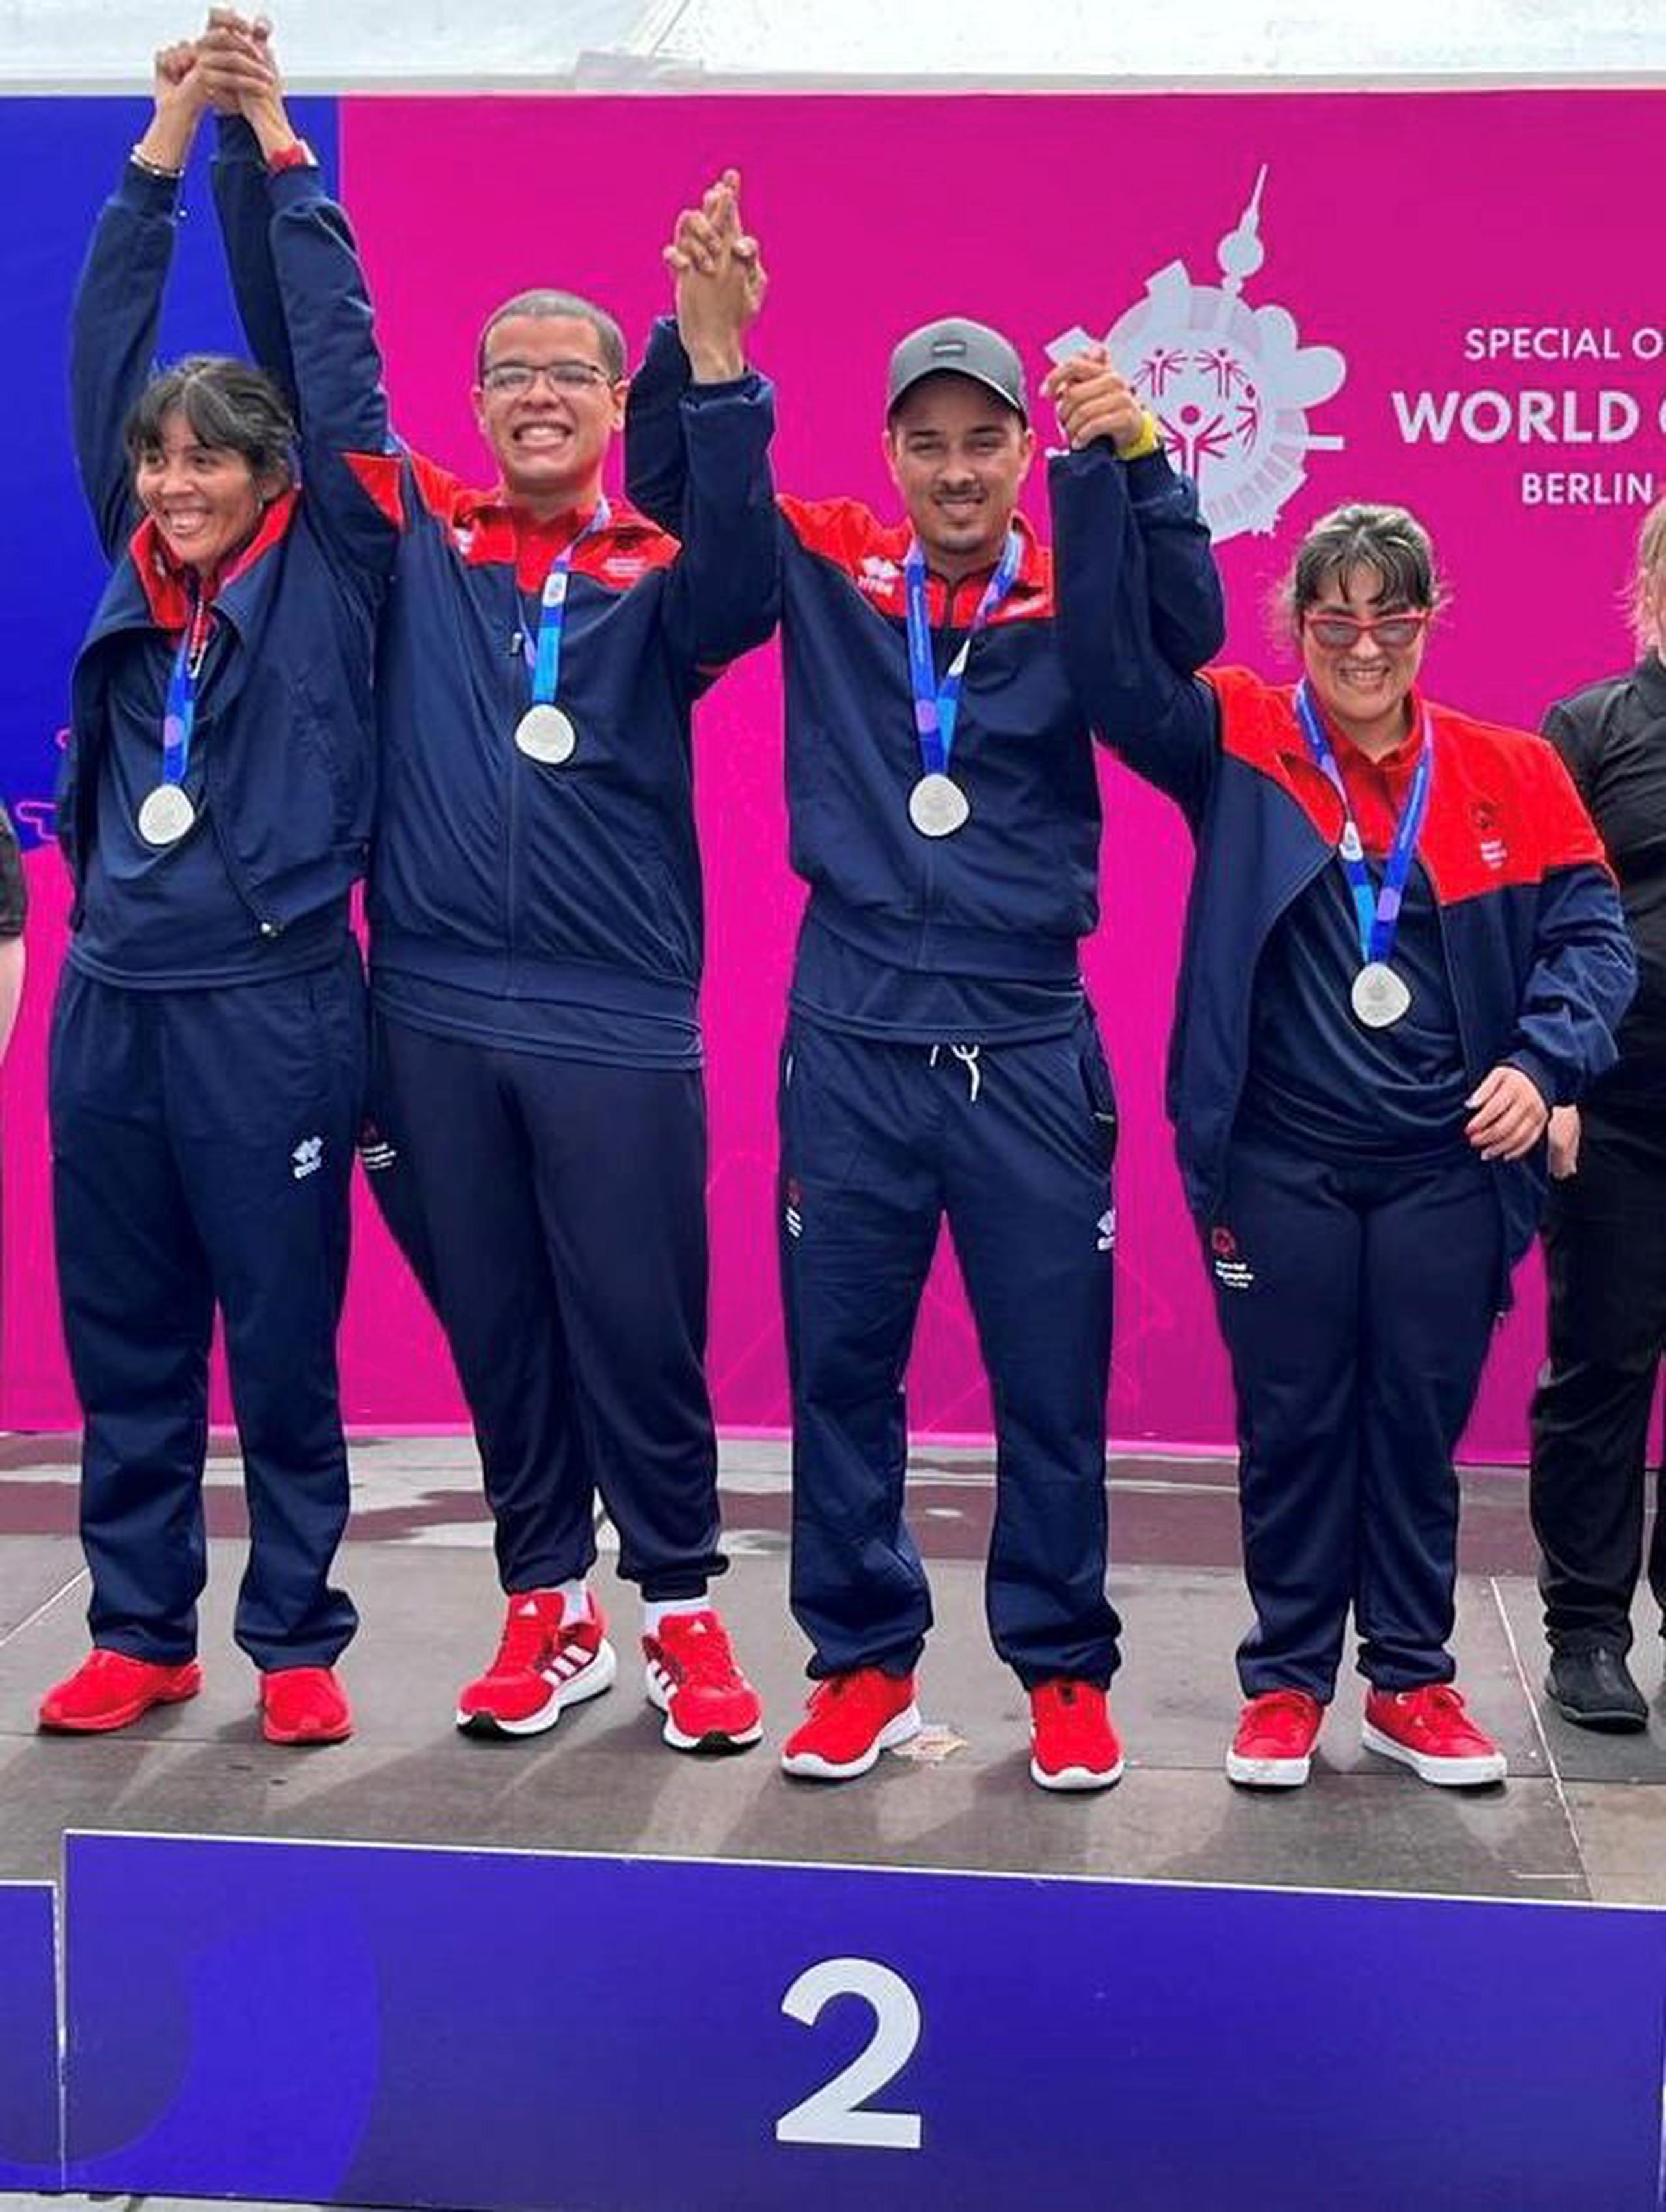 El equipo de bowling de Olimpiadas Especiales de Puerto Rico ganó medalla de plata en el evento que se celebra en Berlín, Alemania.